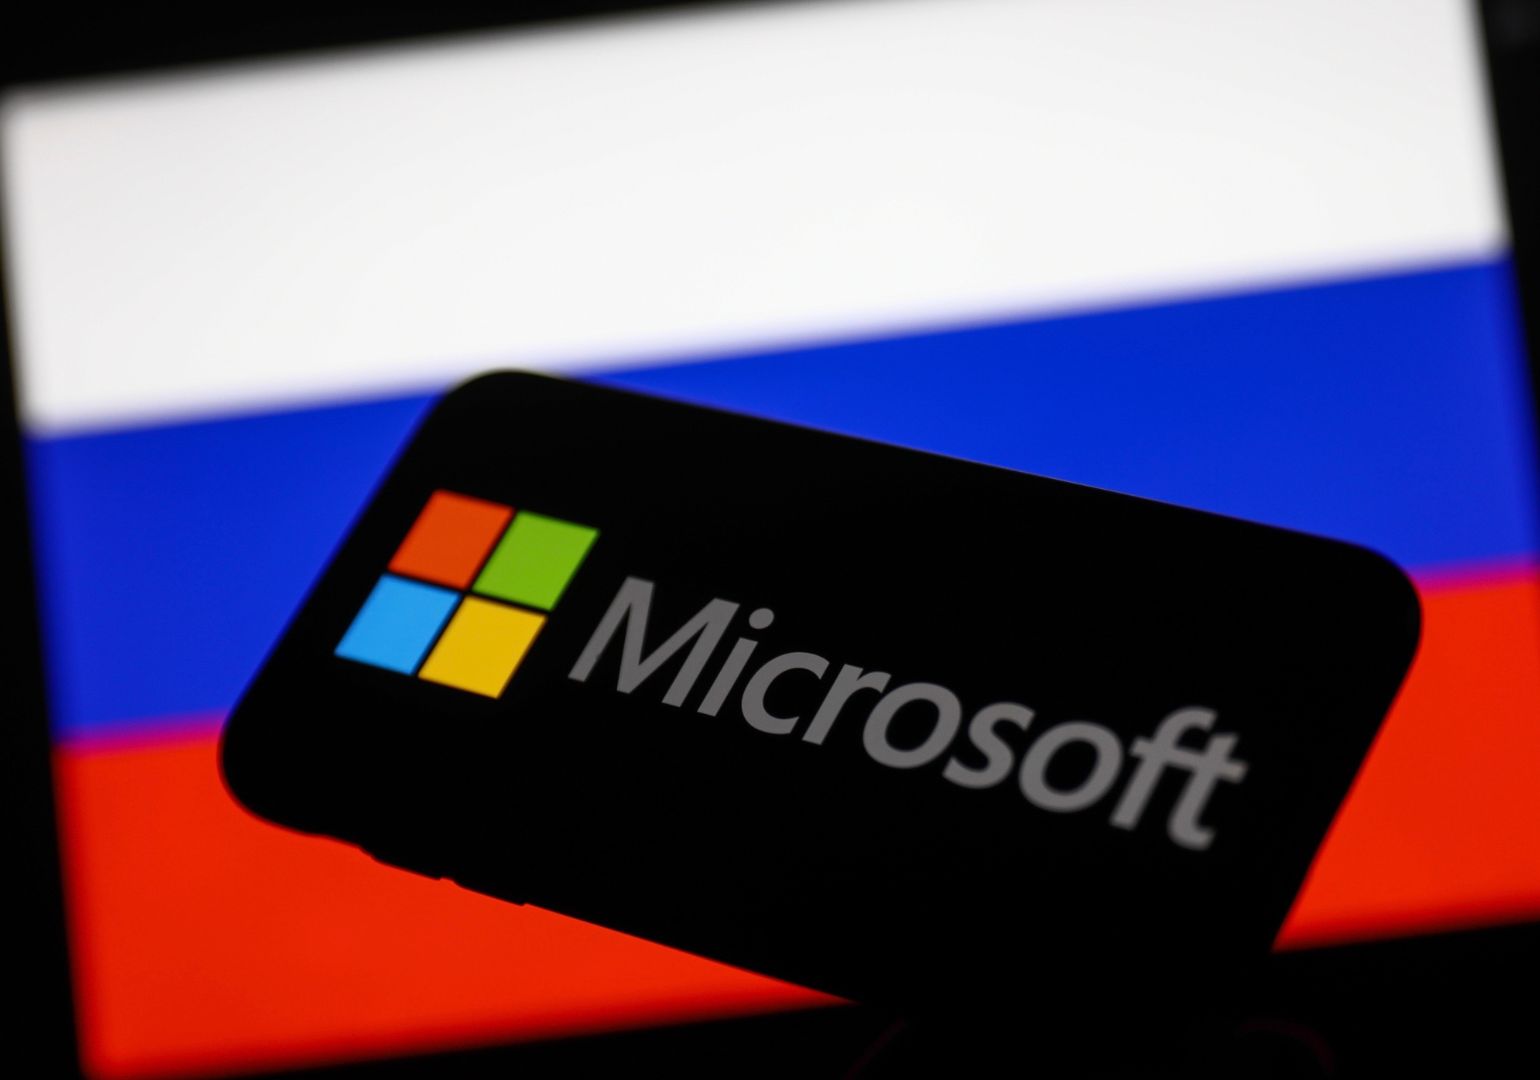 Microsoft-ი რუსეთში ლიცენზიების გაგრძელებას წყვეტს - რა პრობლემებს შექმნის ქვეყანაში კომპანიის გადაწყვეტილება?